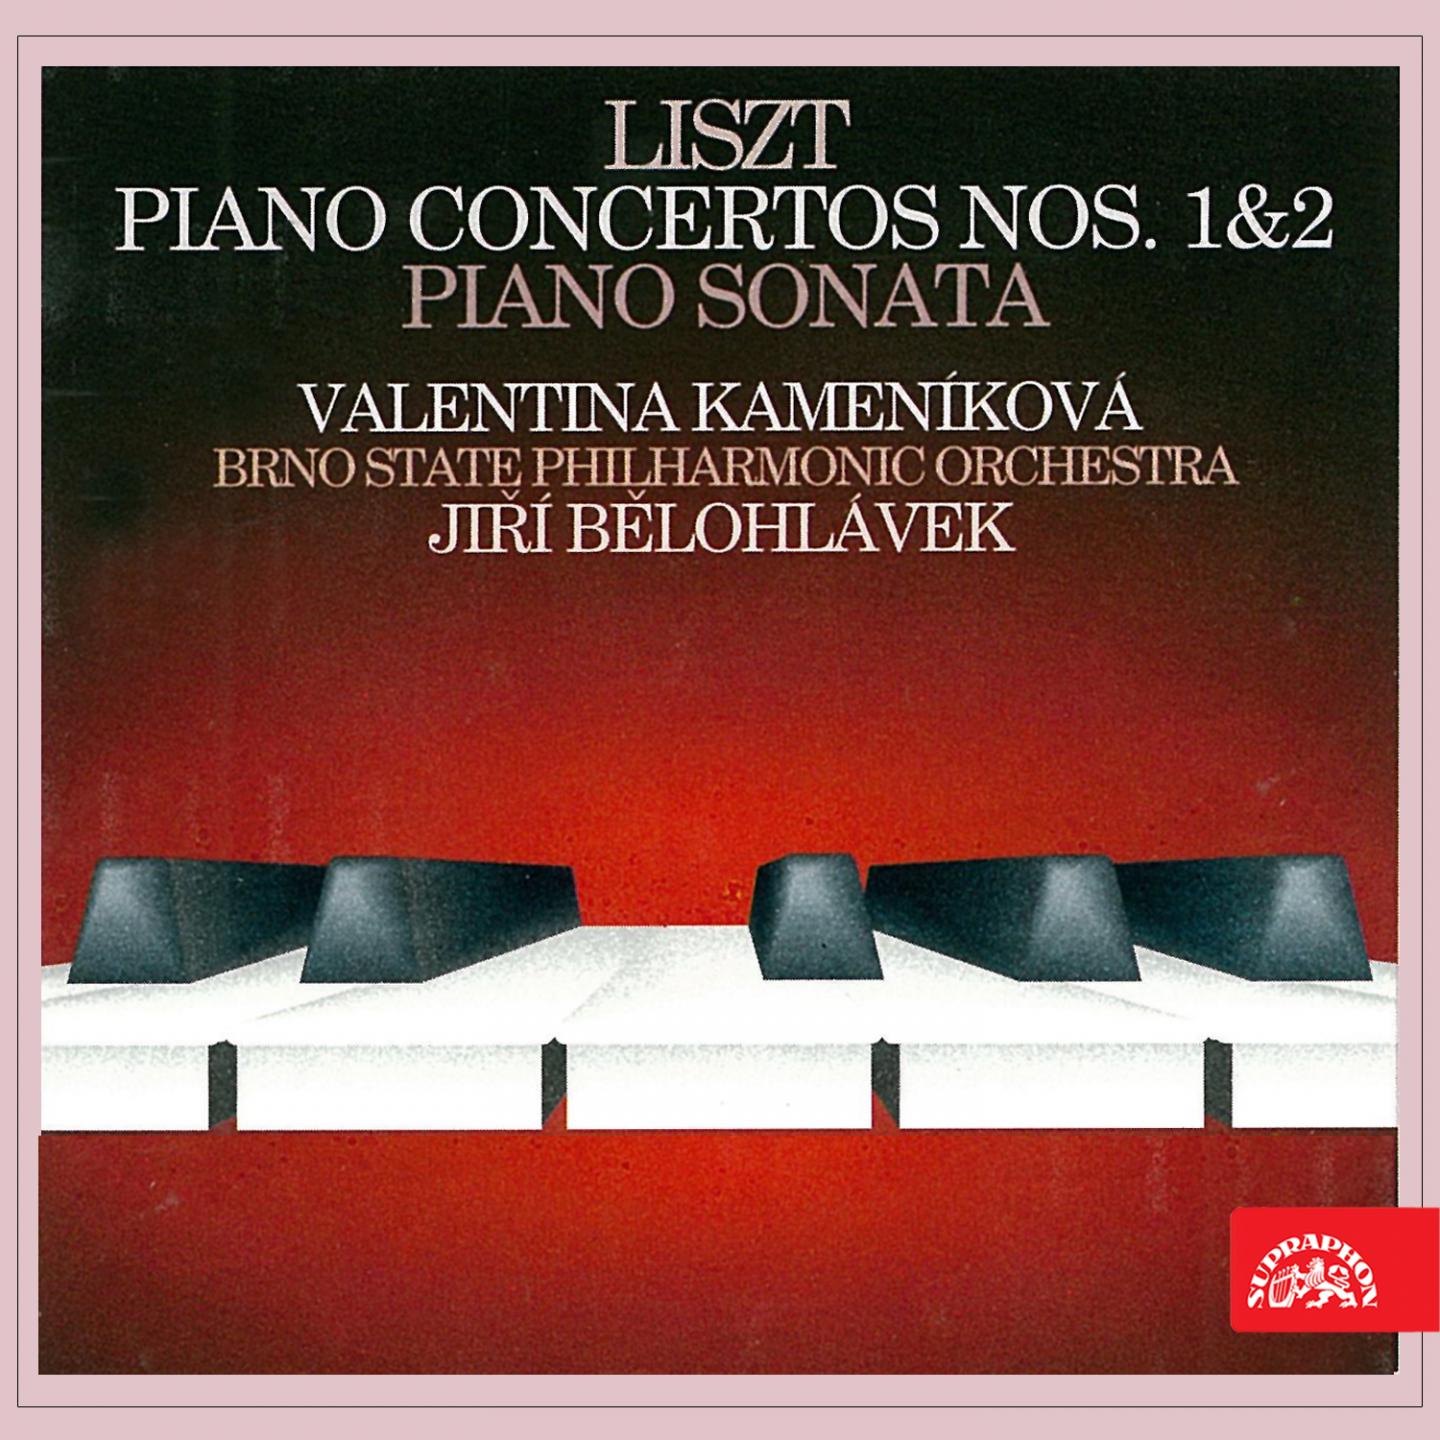 Piano Concerto No. 1 in E-Flat Major, S. 124: II. Quasi adagio - Allegretto vivace